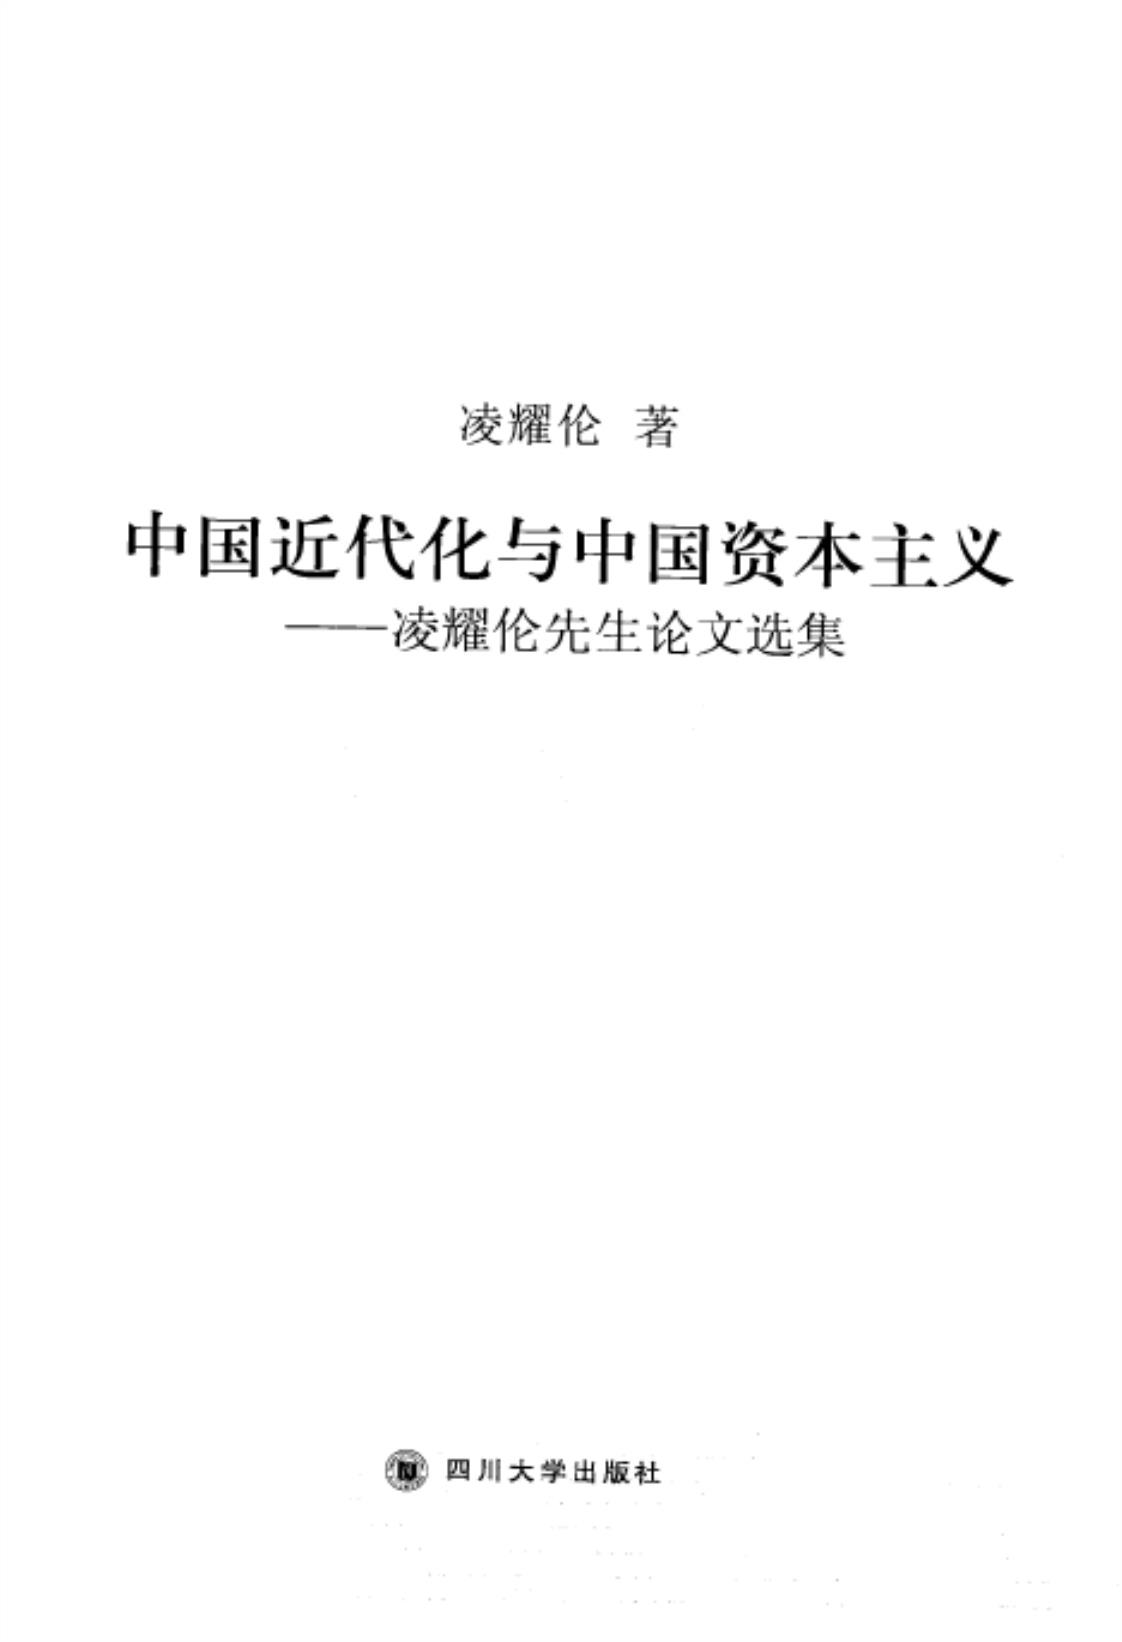 [中国近代化与中国资本主义(凌耀伦先生论文选集)][凌耀伦(著)]高清PDF电子书下载